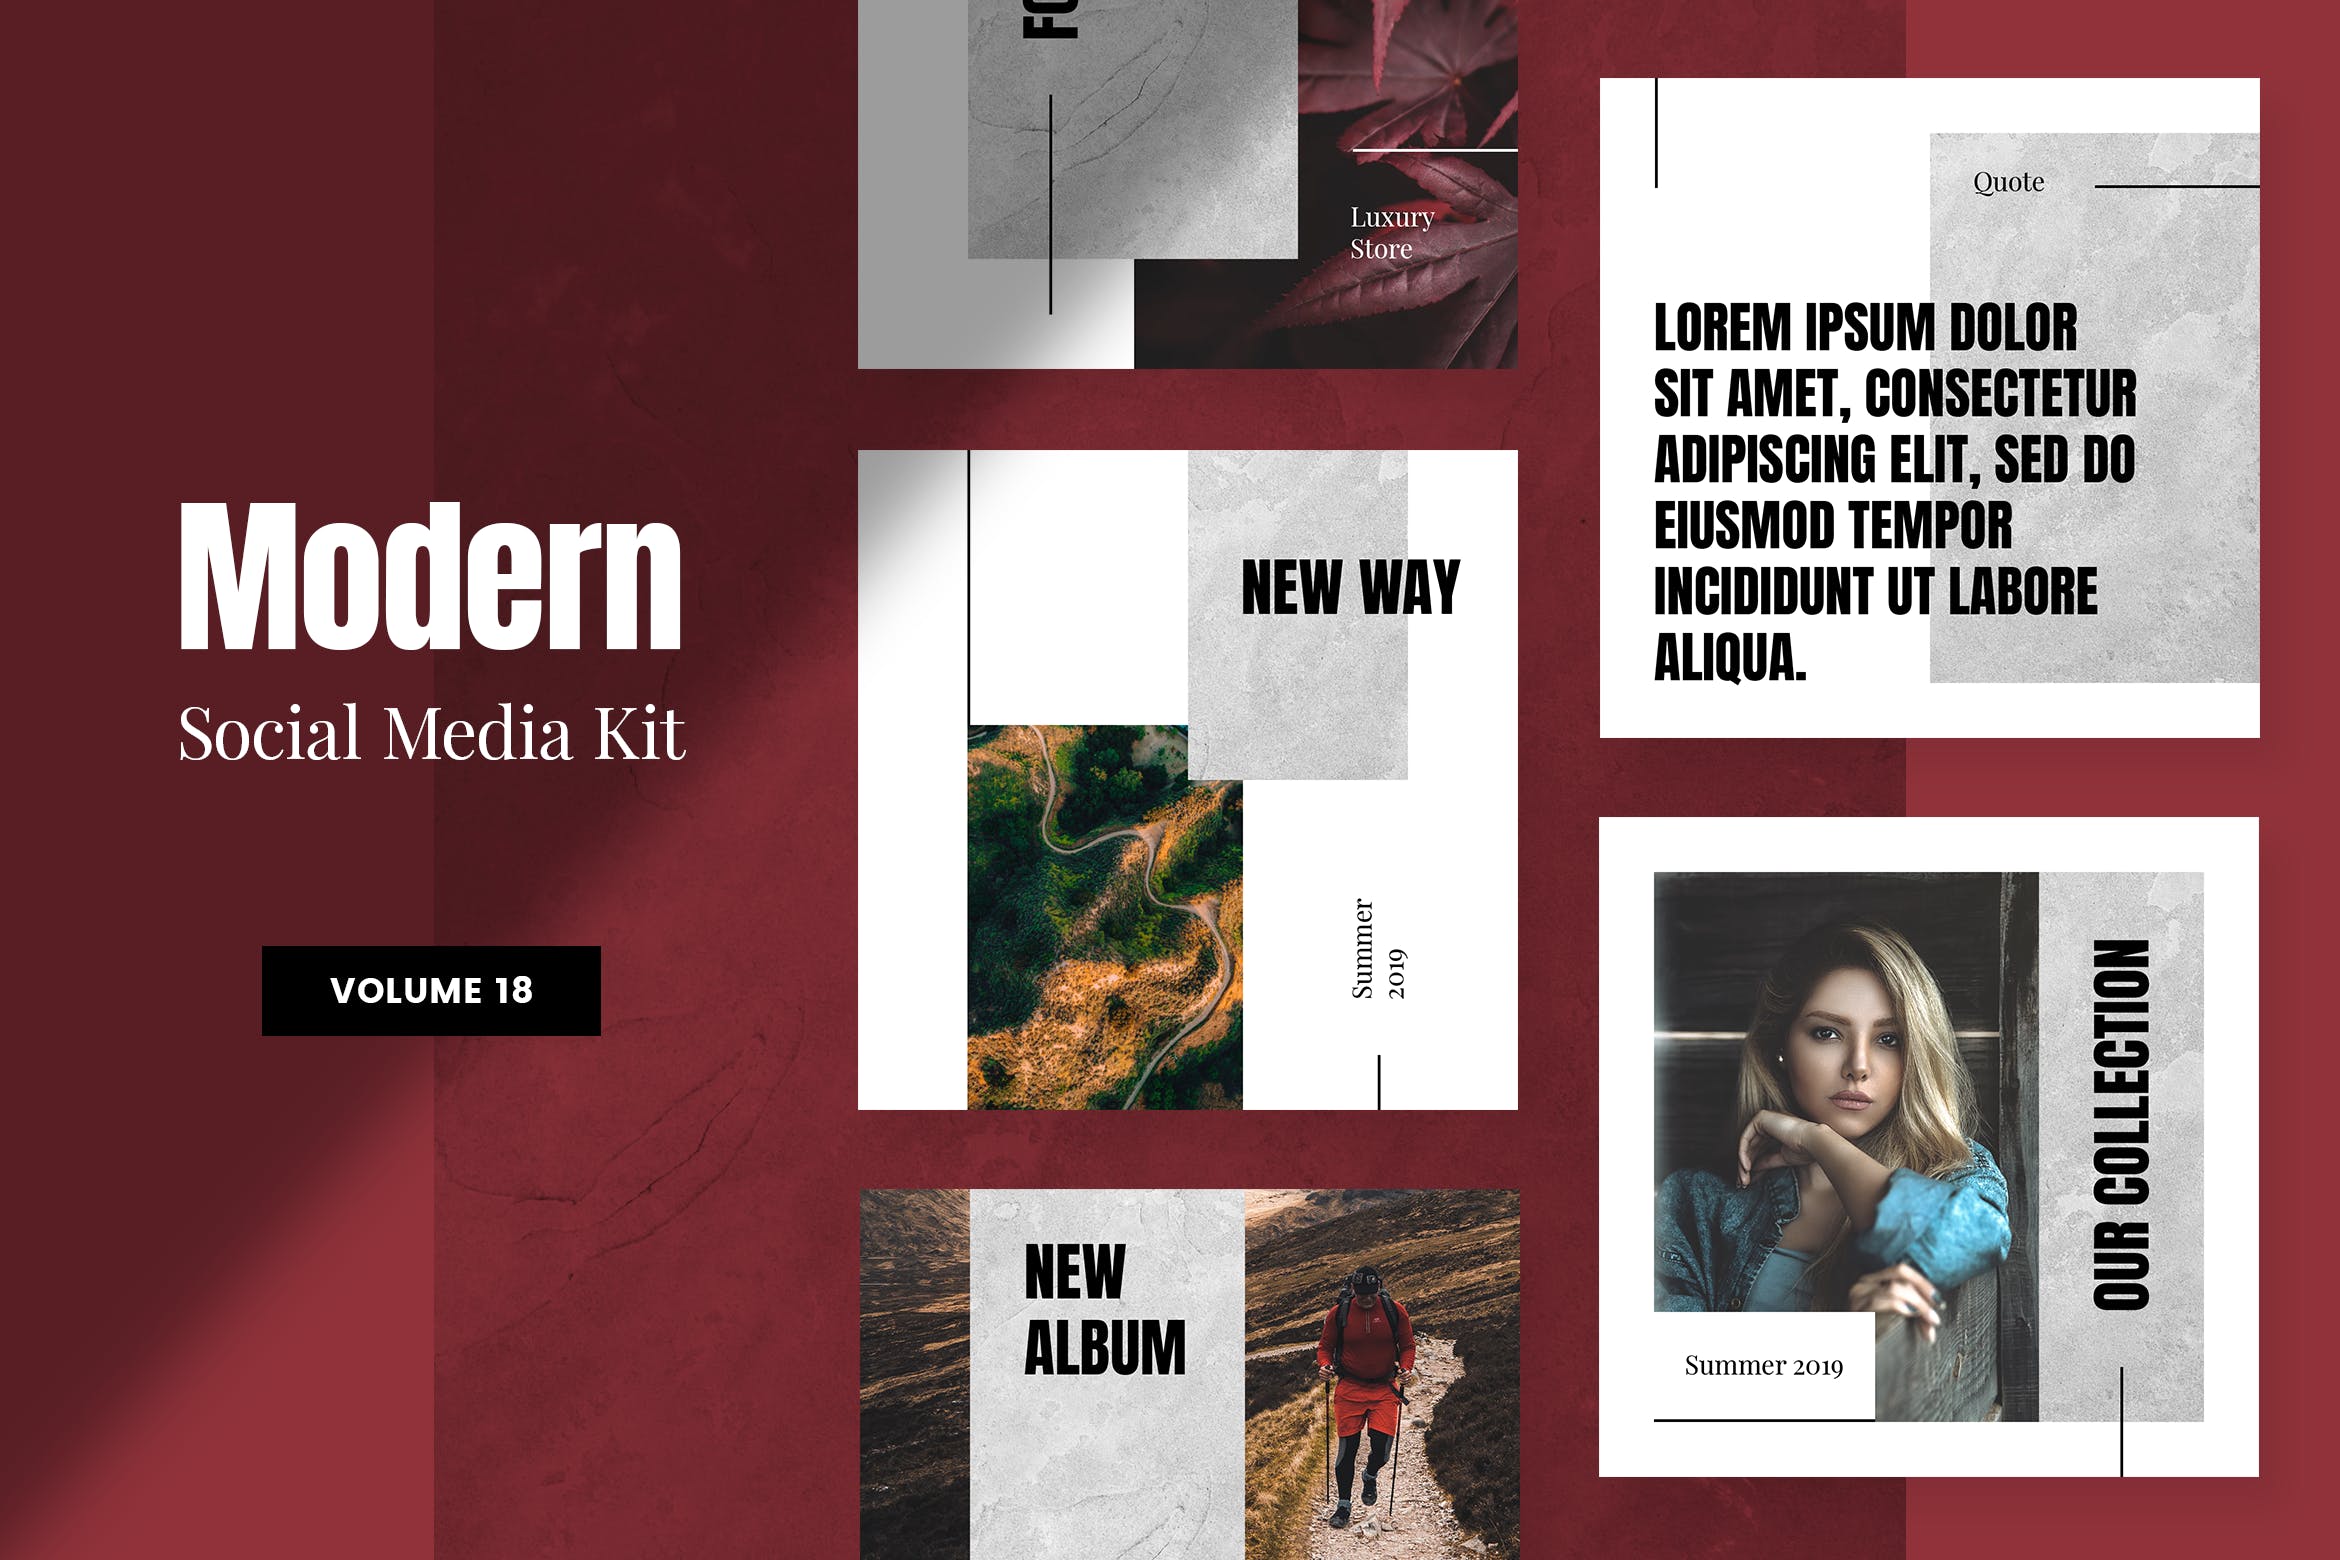 现代风格社交媒体品牌推广设计模板非凡图库精选v18 Modern Social Media Kit (Vol. 18)插图